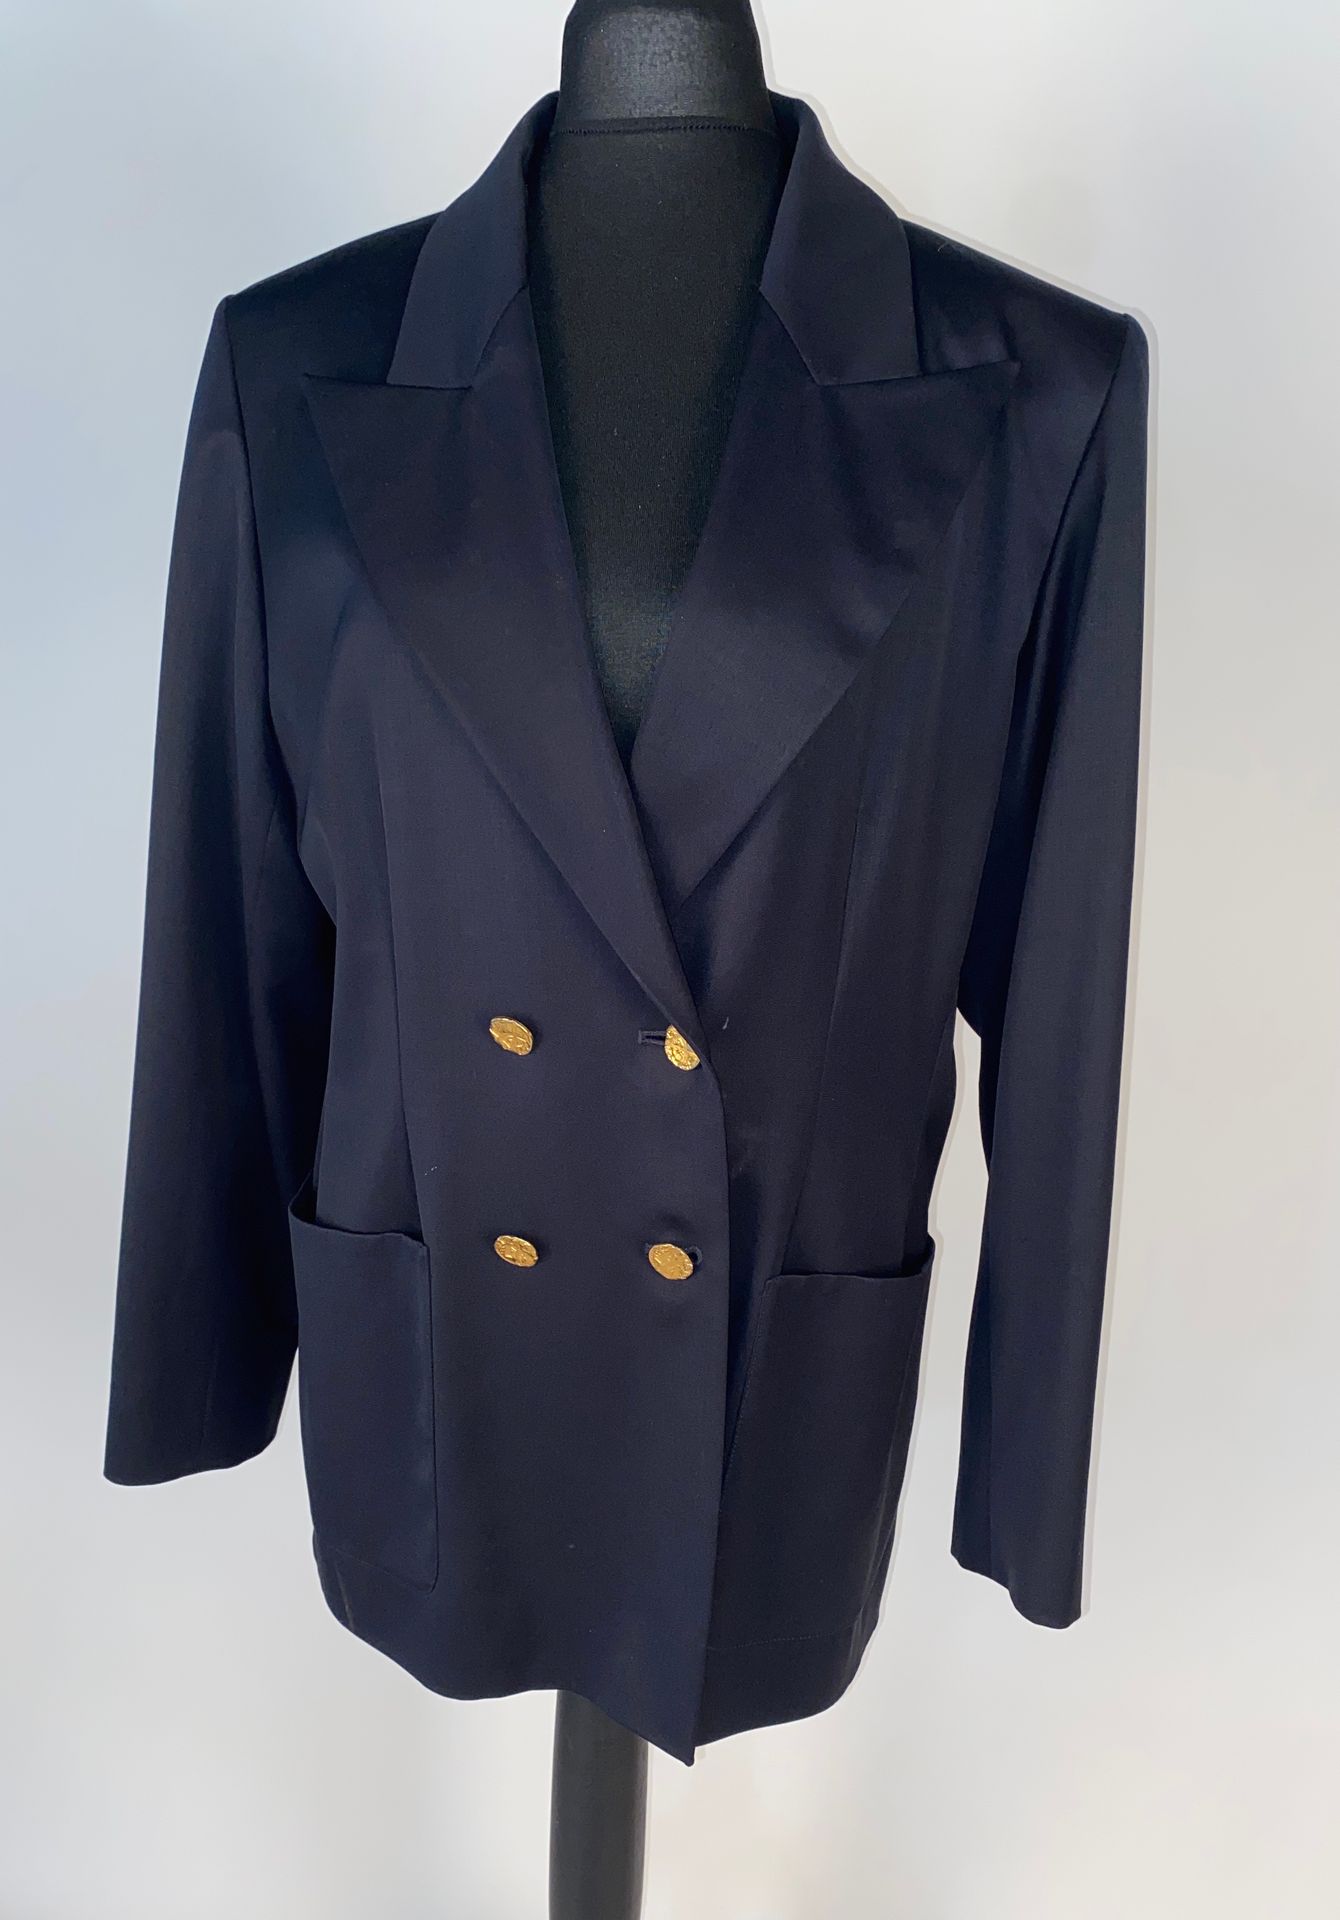 YVES SAINT LAURENT. Variation. Suit jacket and pants, wo… | Drouot.com